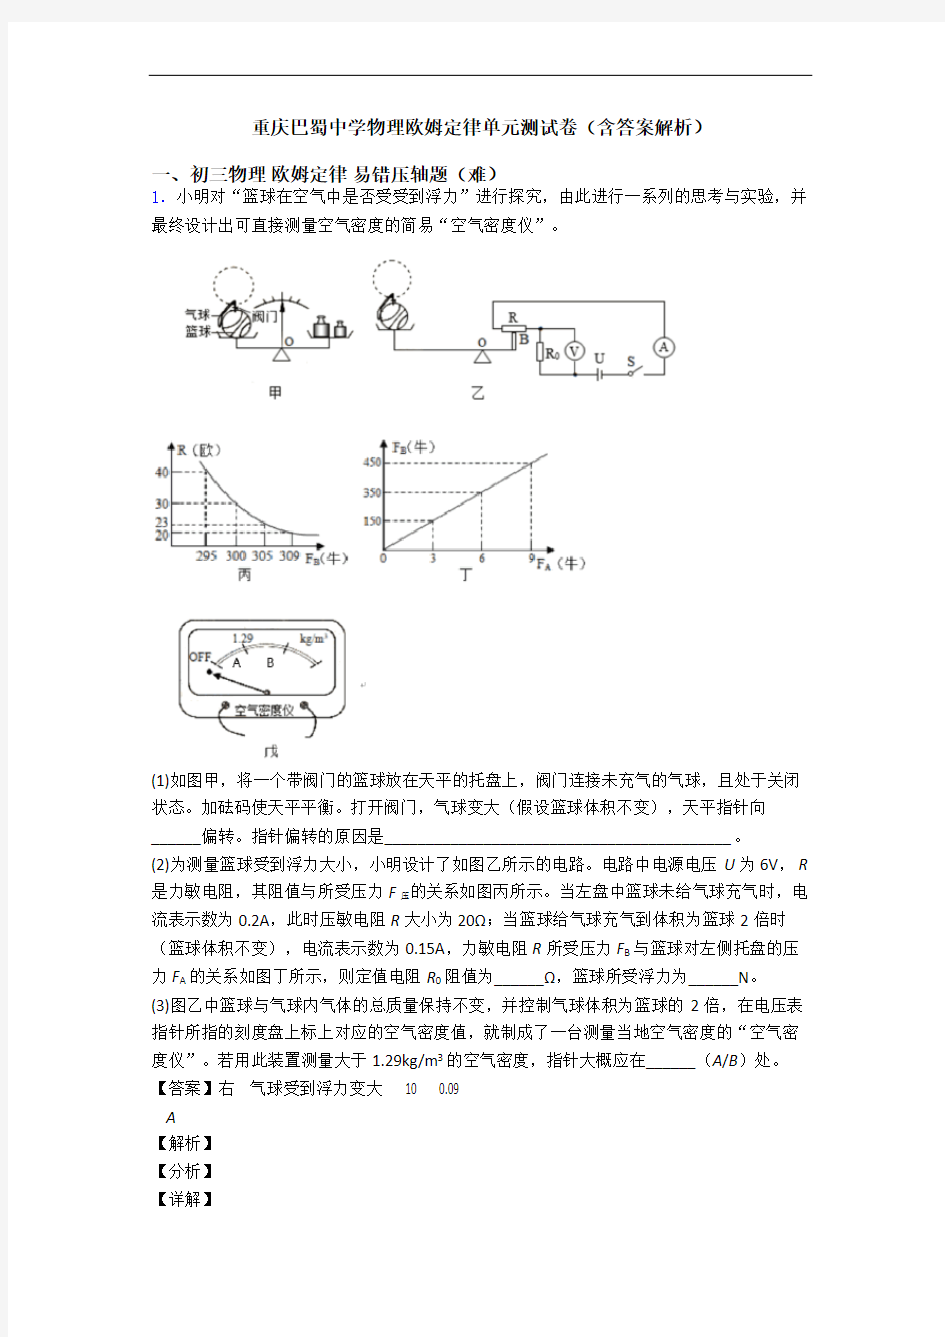 重庆巴蜀中学物理欧姆定律单元测试卷(含答案解析)